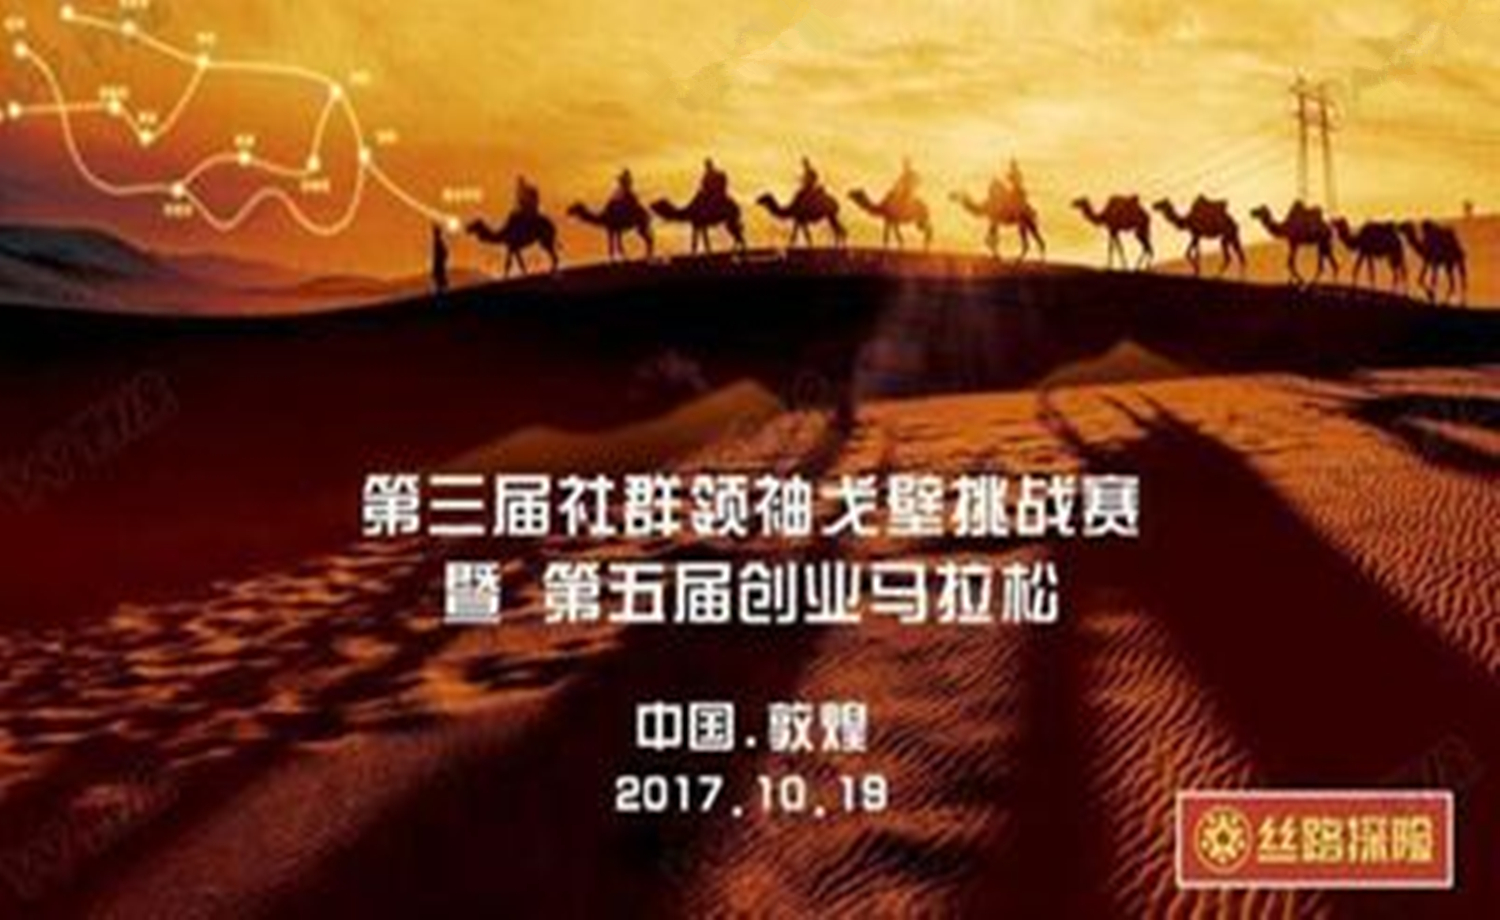 丝路探险 第三届社群领袖戈壁挑战赛暨第五届中国创业